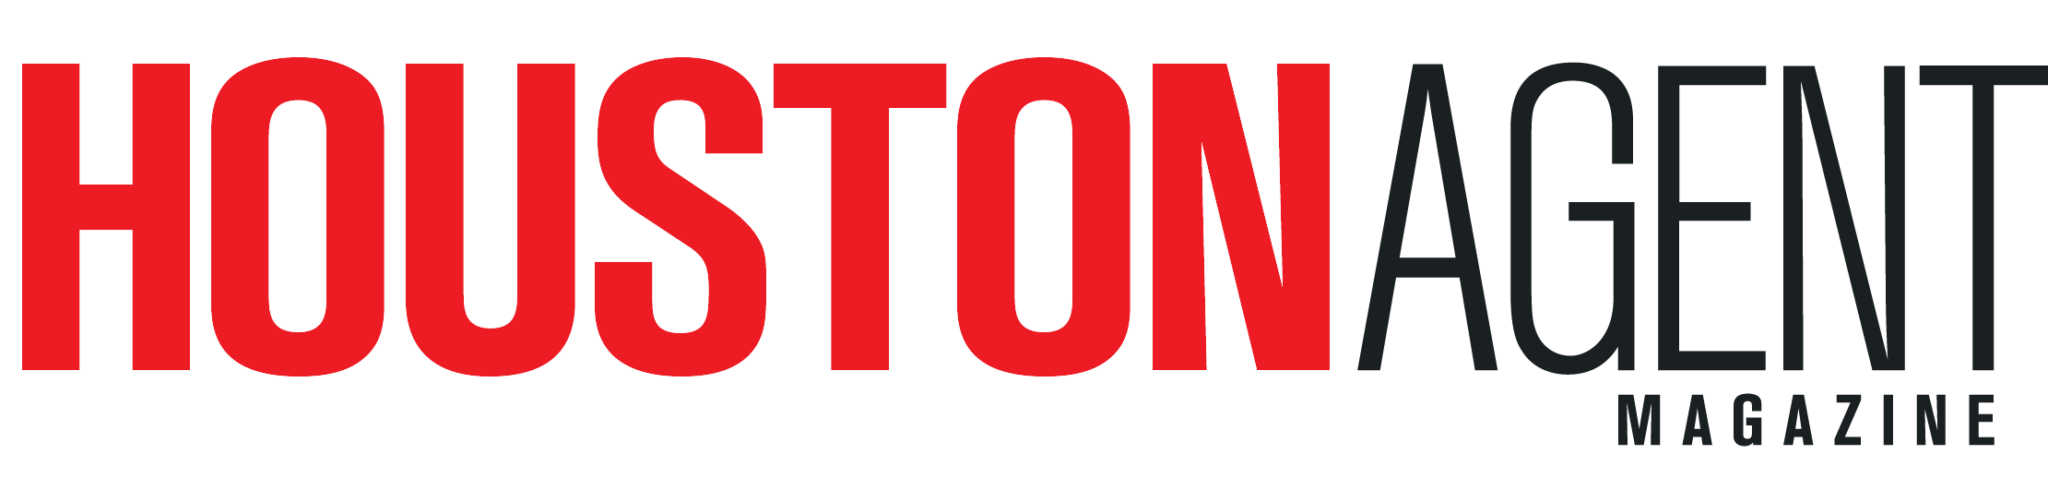 houston-agent-logo-two